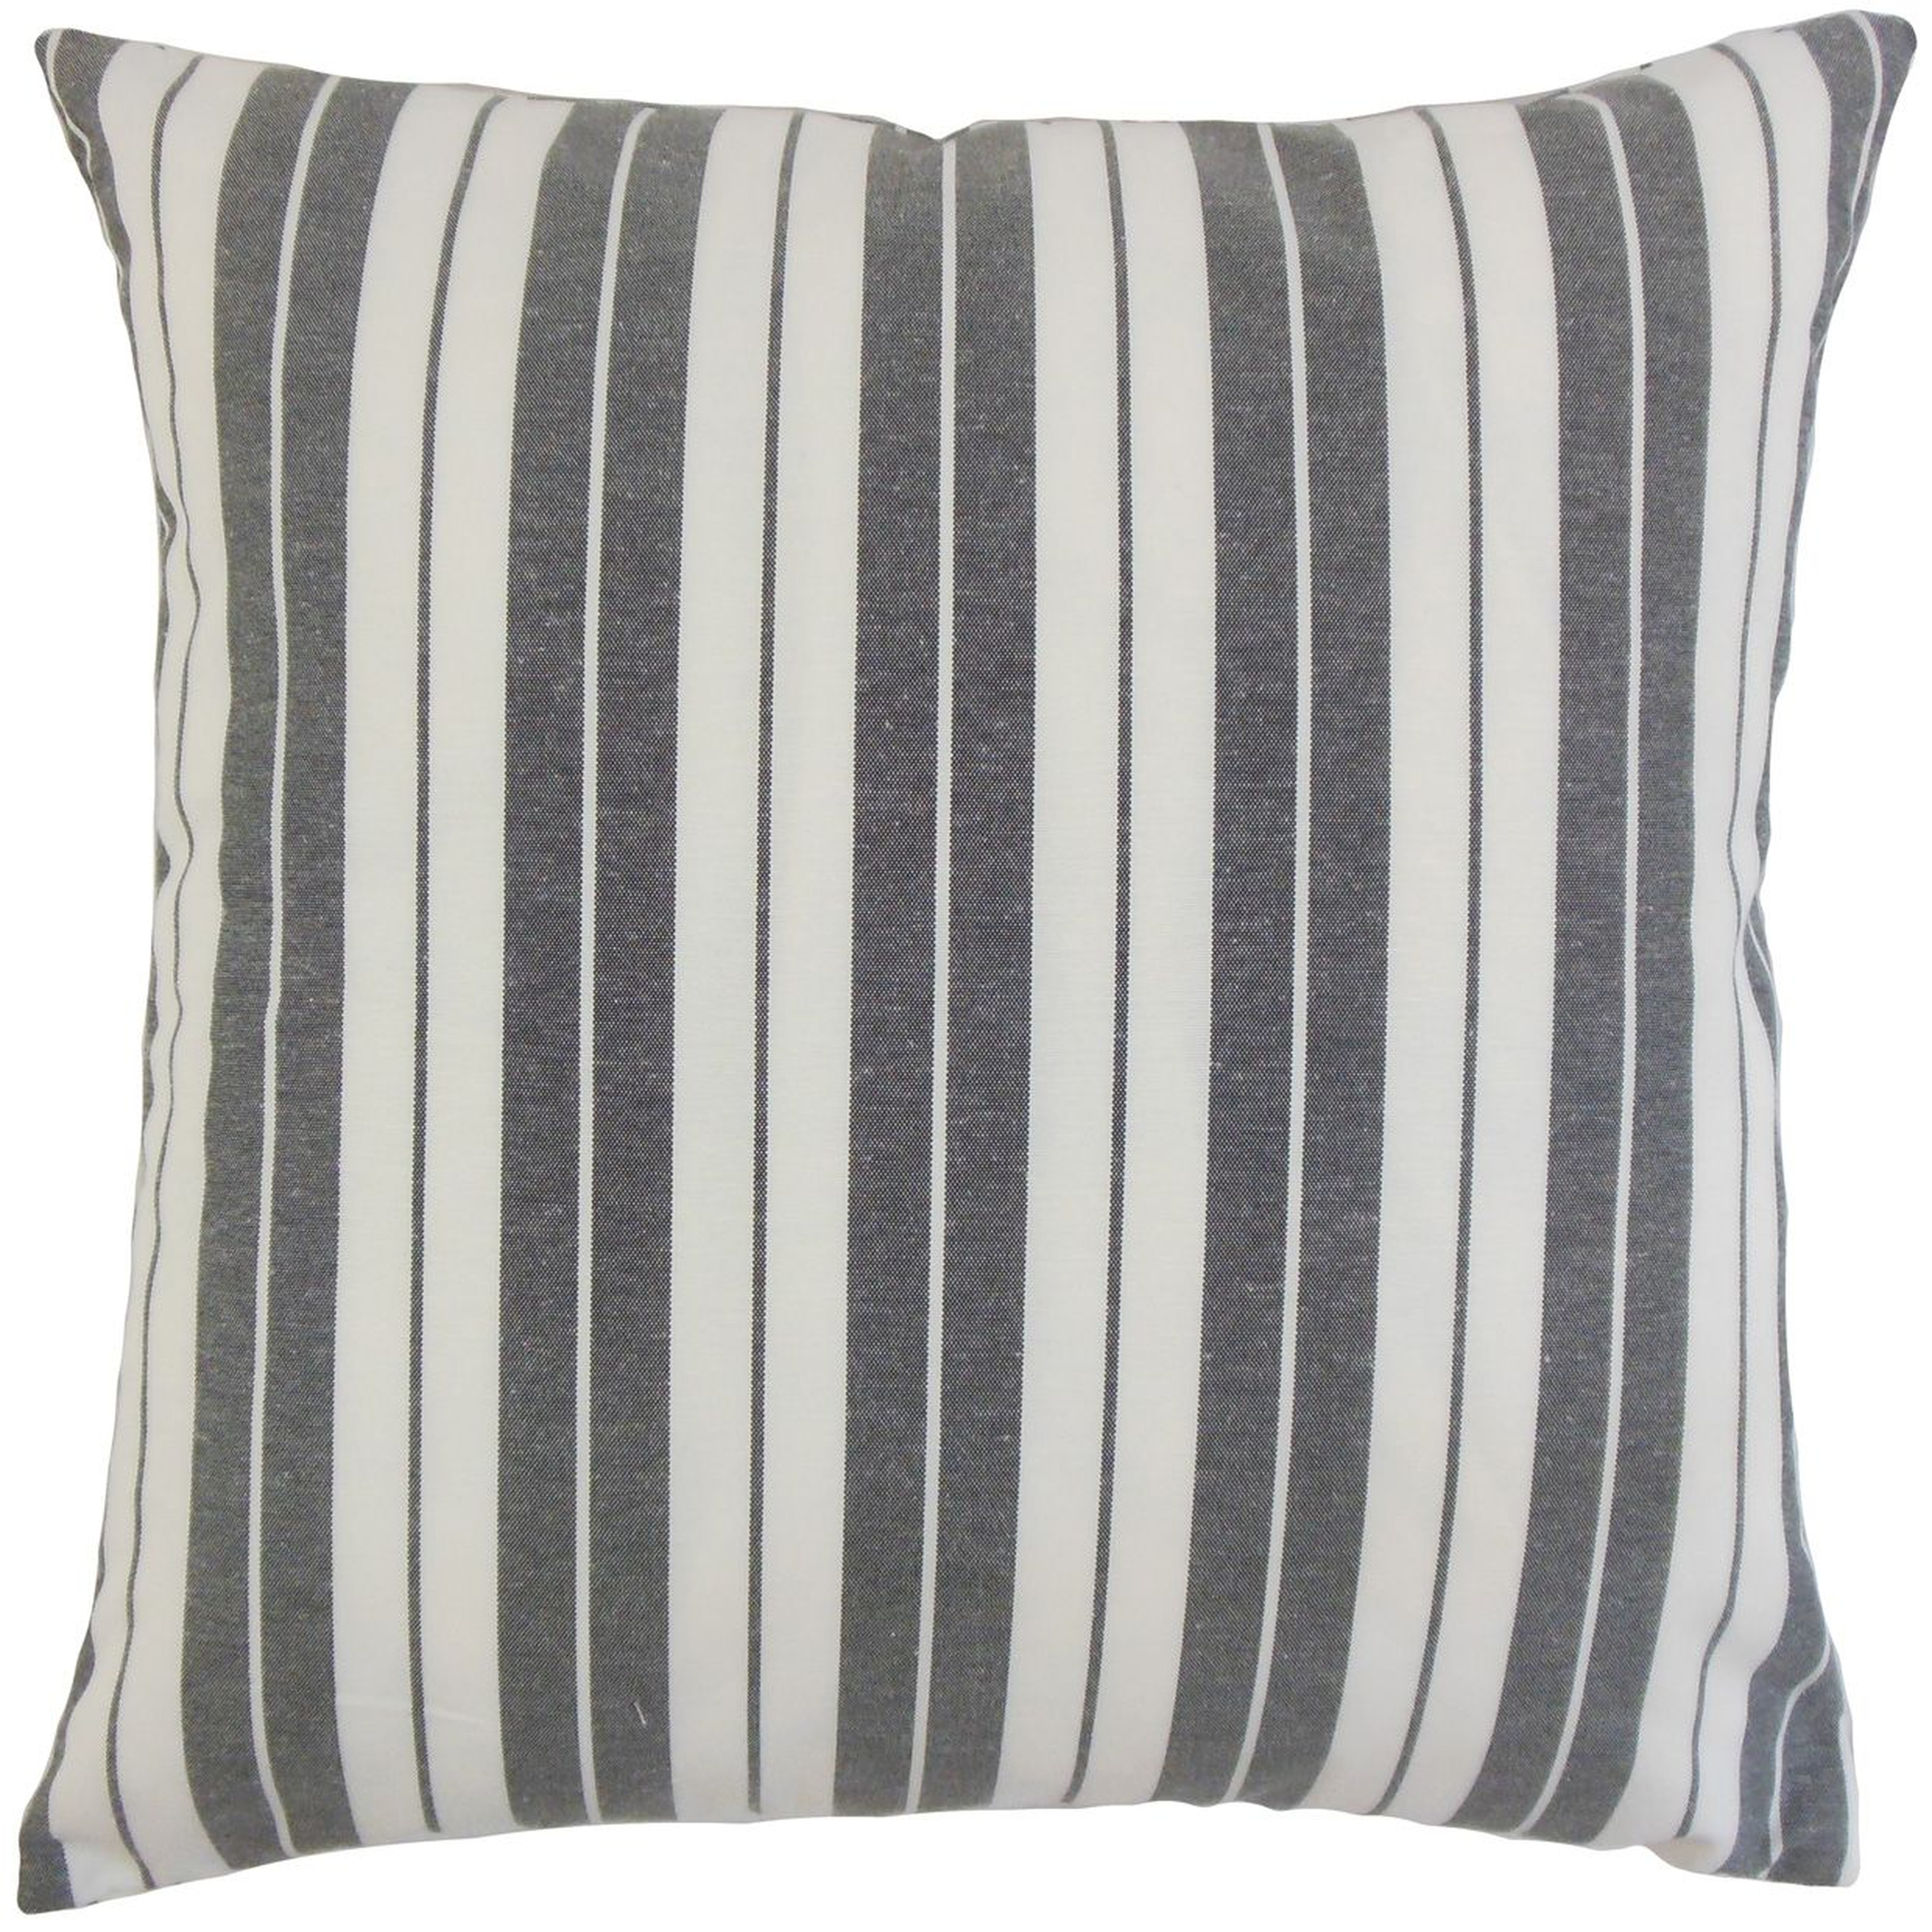 Henley Stripe Pillow, Black, 18" x 18" - Havenly Essentials